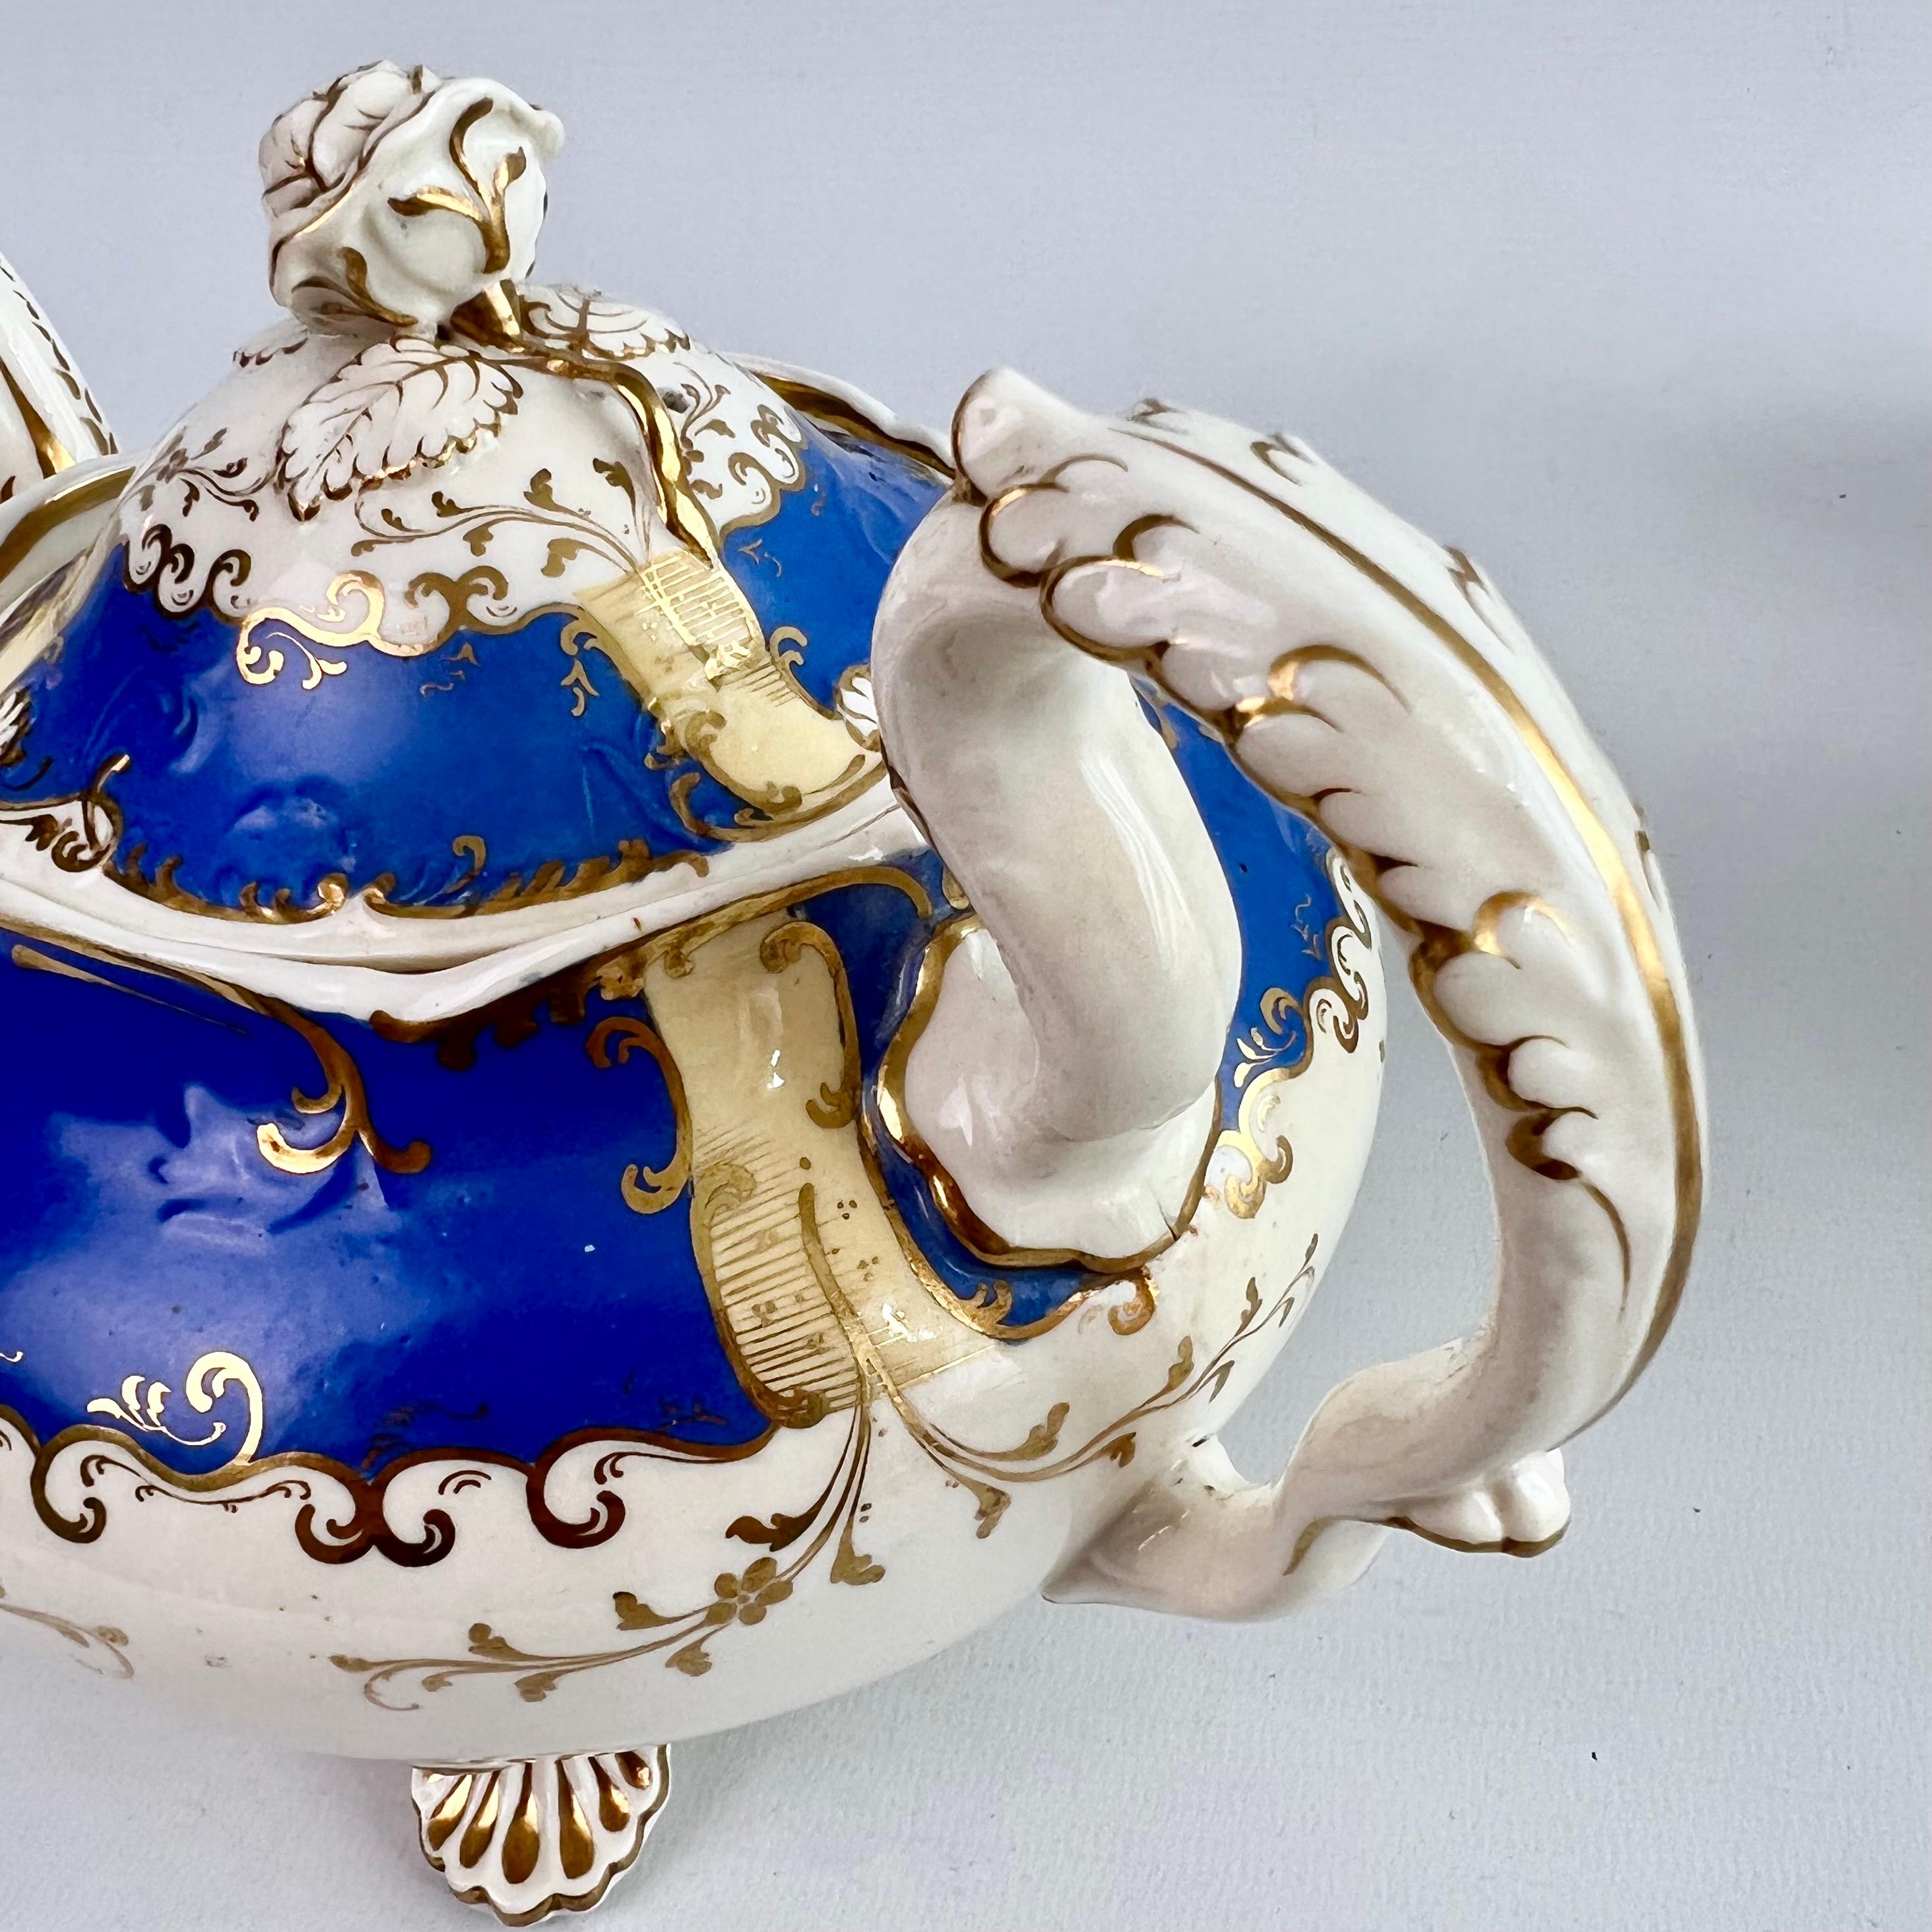 H & R Daniel Porcelain Teapot Set, Royal Blue and Gilt, Rococo Revival, 1831 For Sale 2